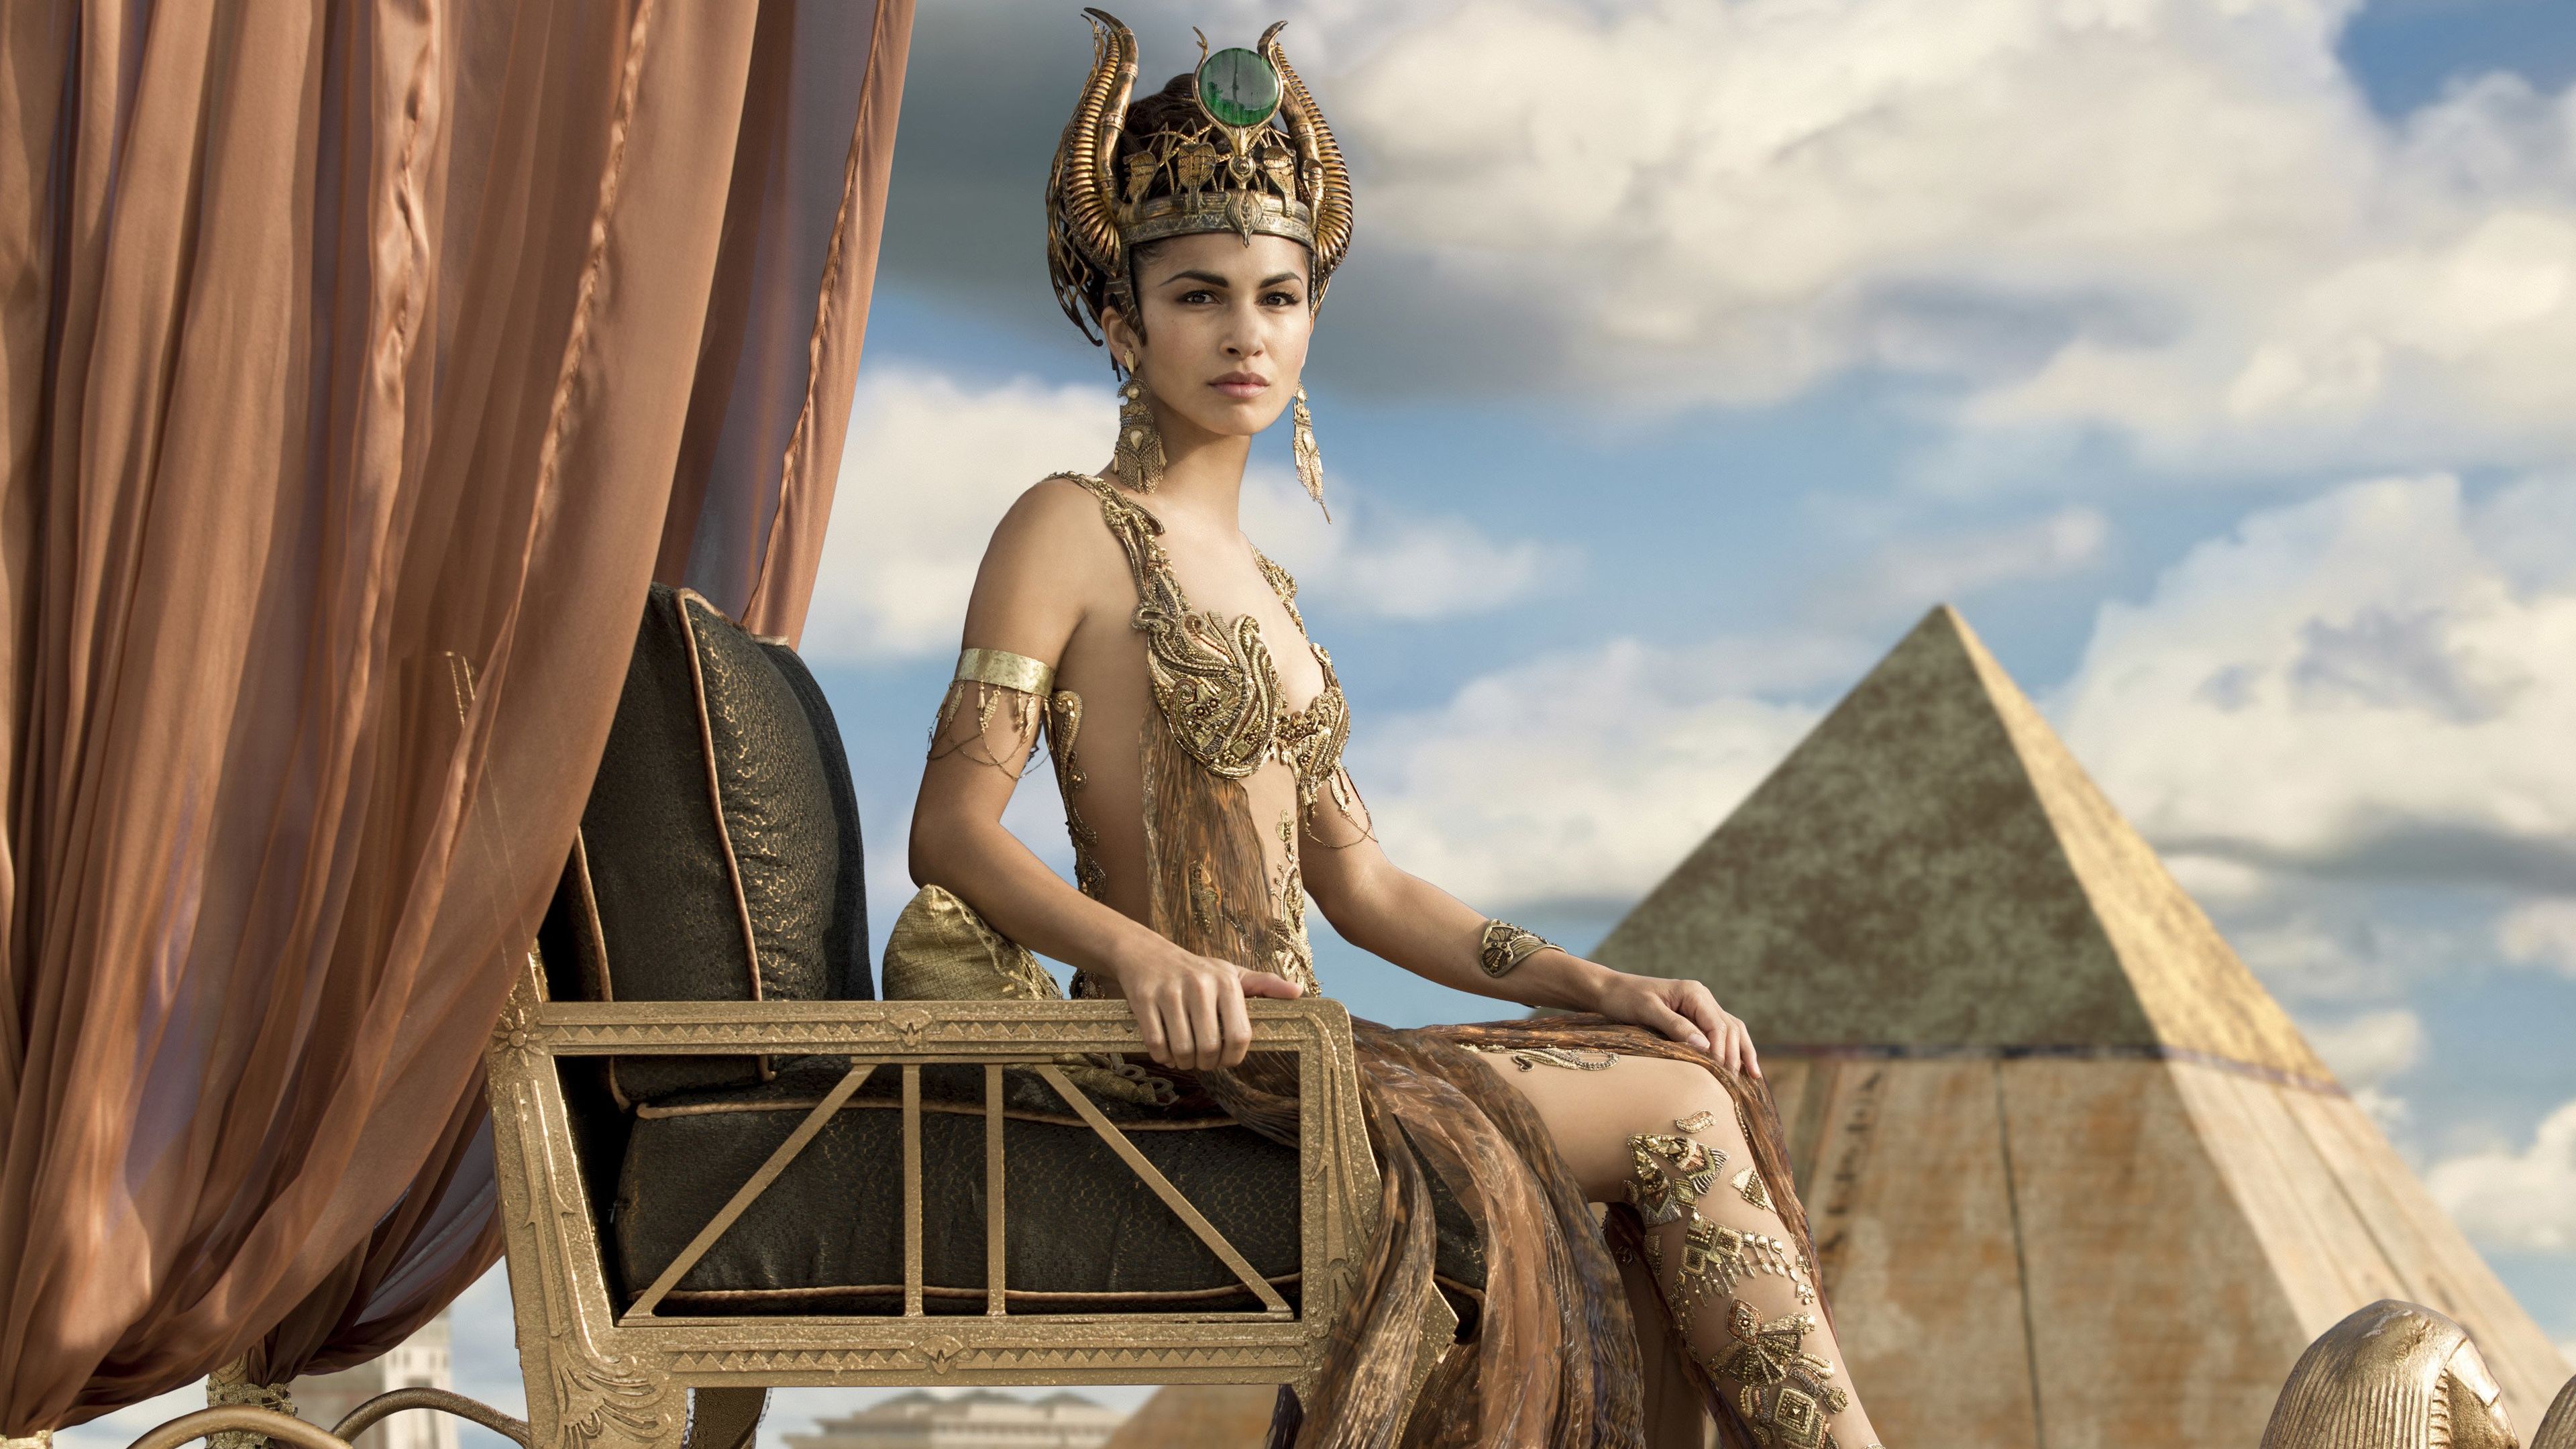 Dioses de Egipto - Crítica de la película de Alex Proyas